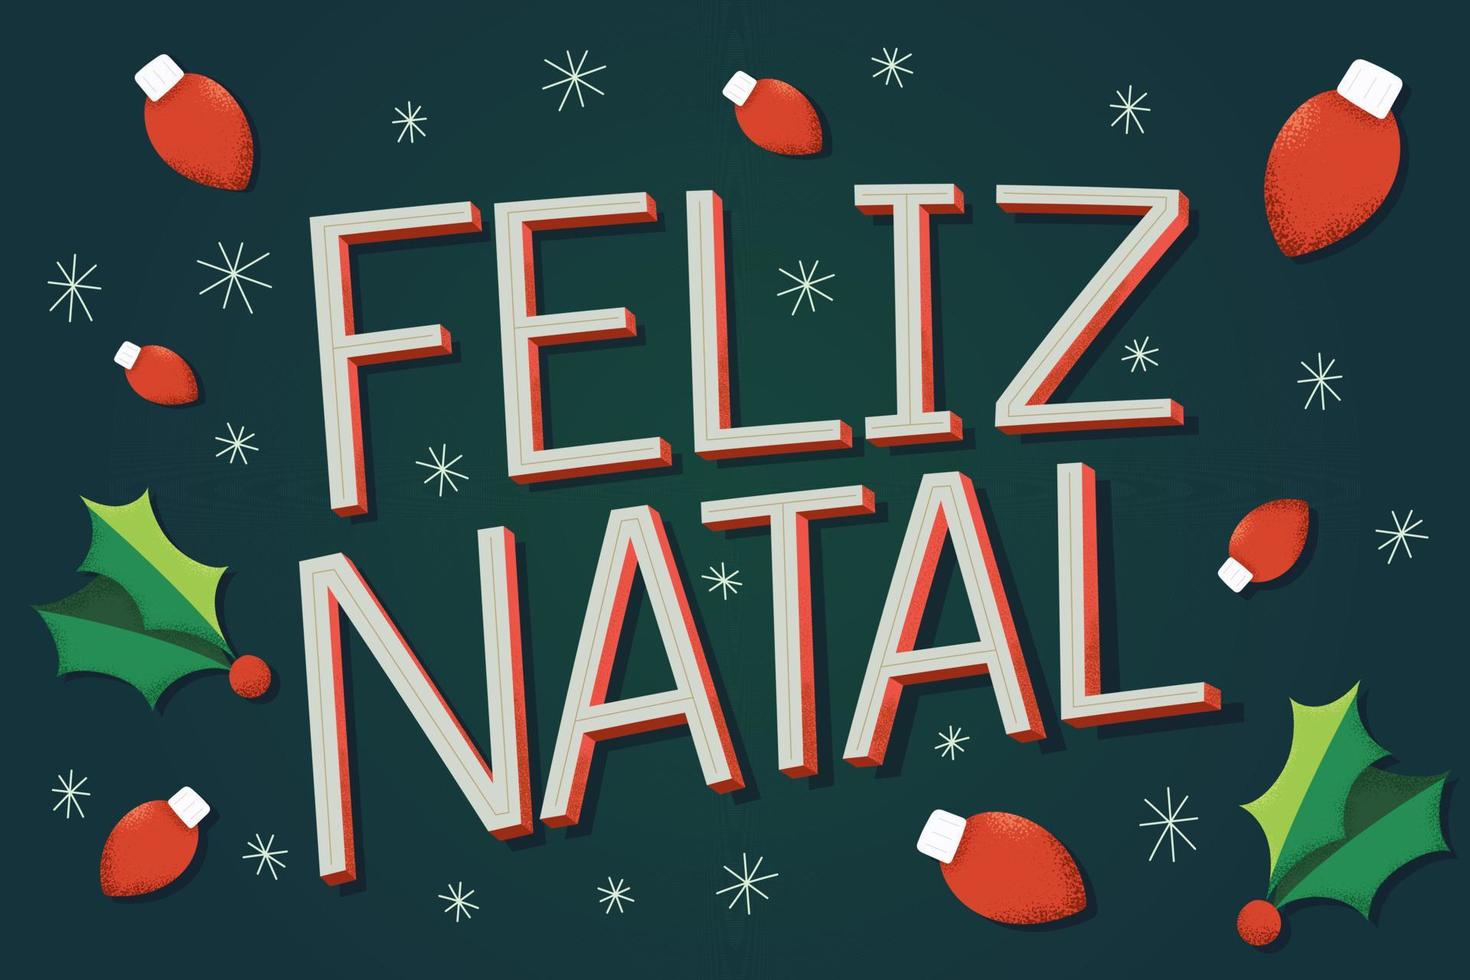 feliz ilustración navideña en portugués brasileño con luces navideñas y escamas de hielo. fondo verde traducción - feliz navidad. vector